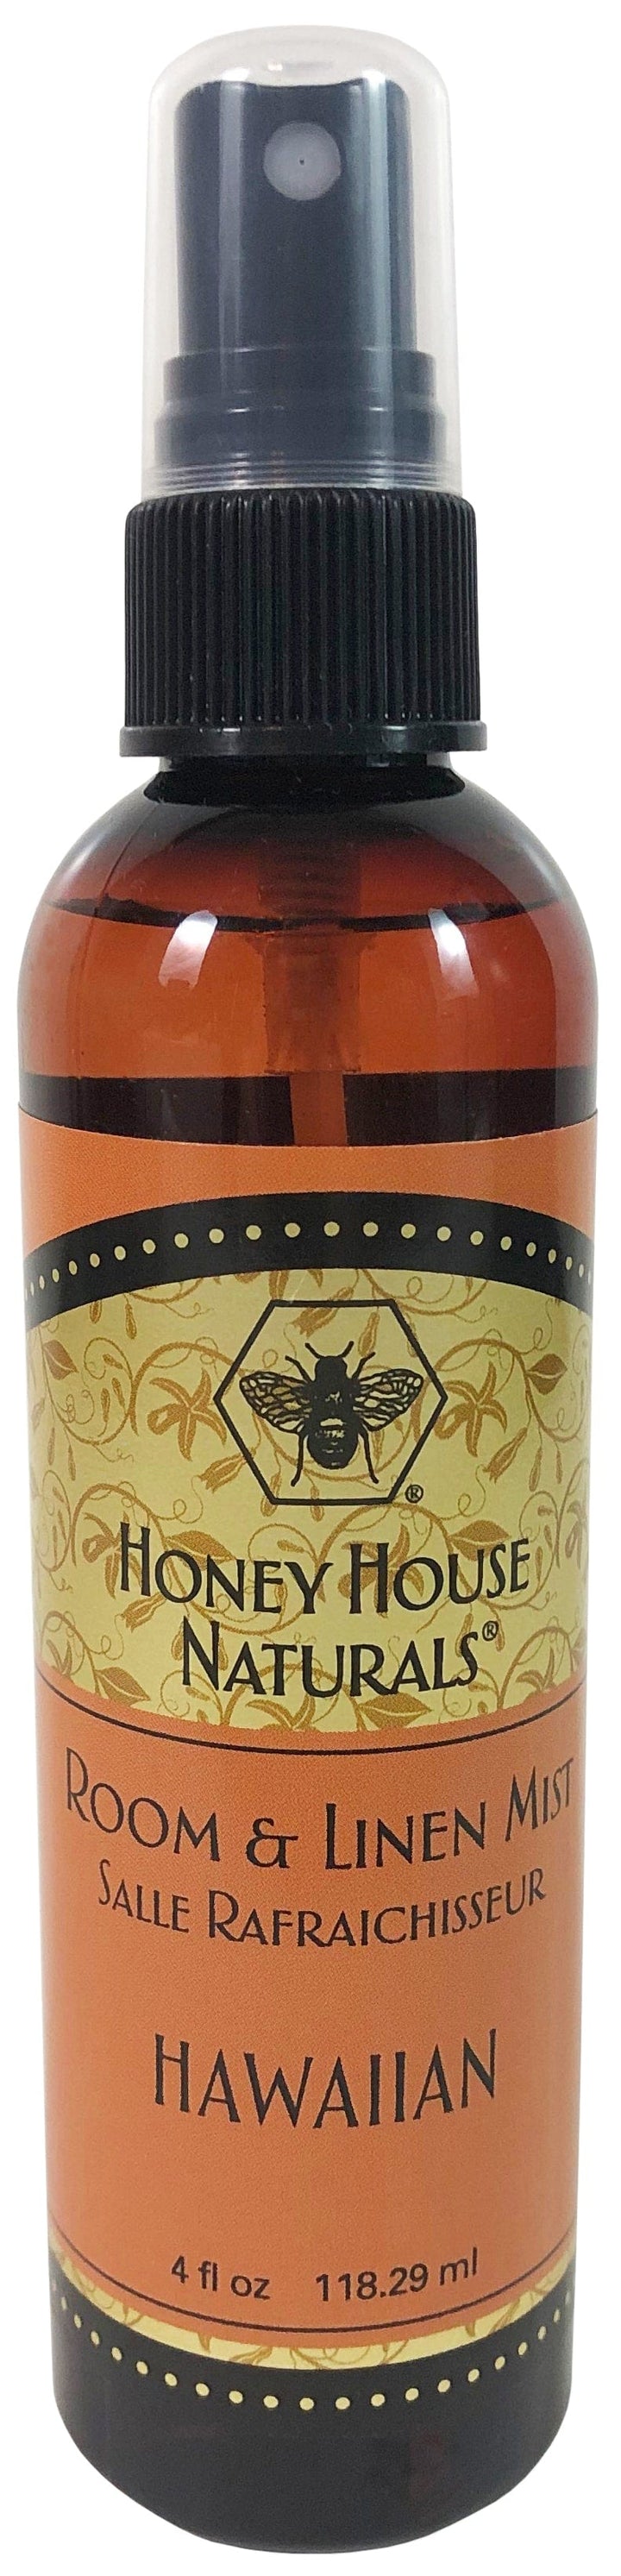 Honey House Naturals Room Mist & Bee Butter Cream Tube Gift Set